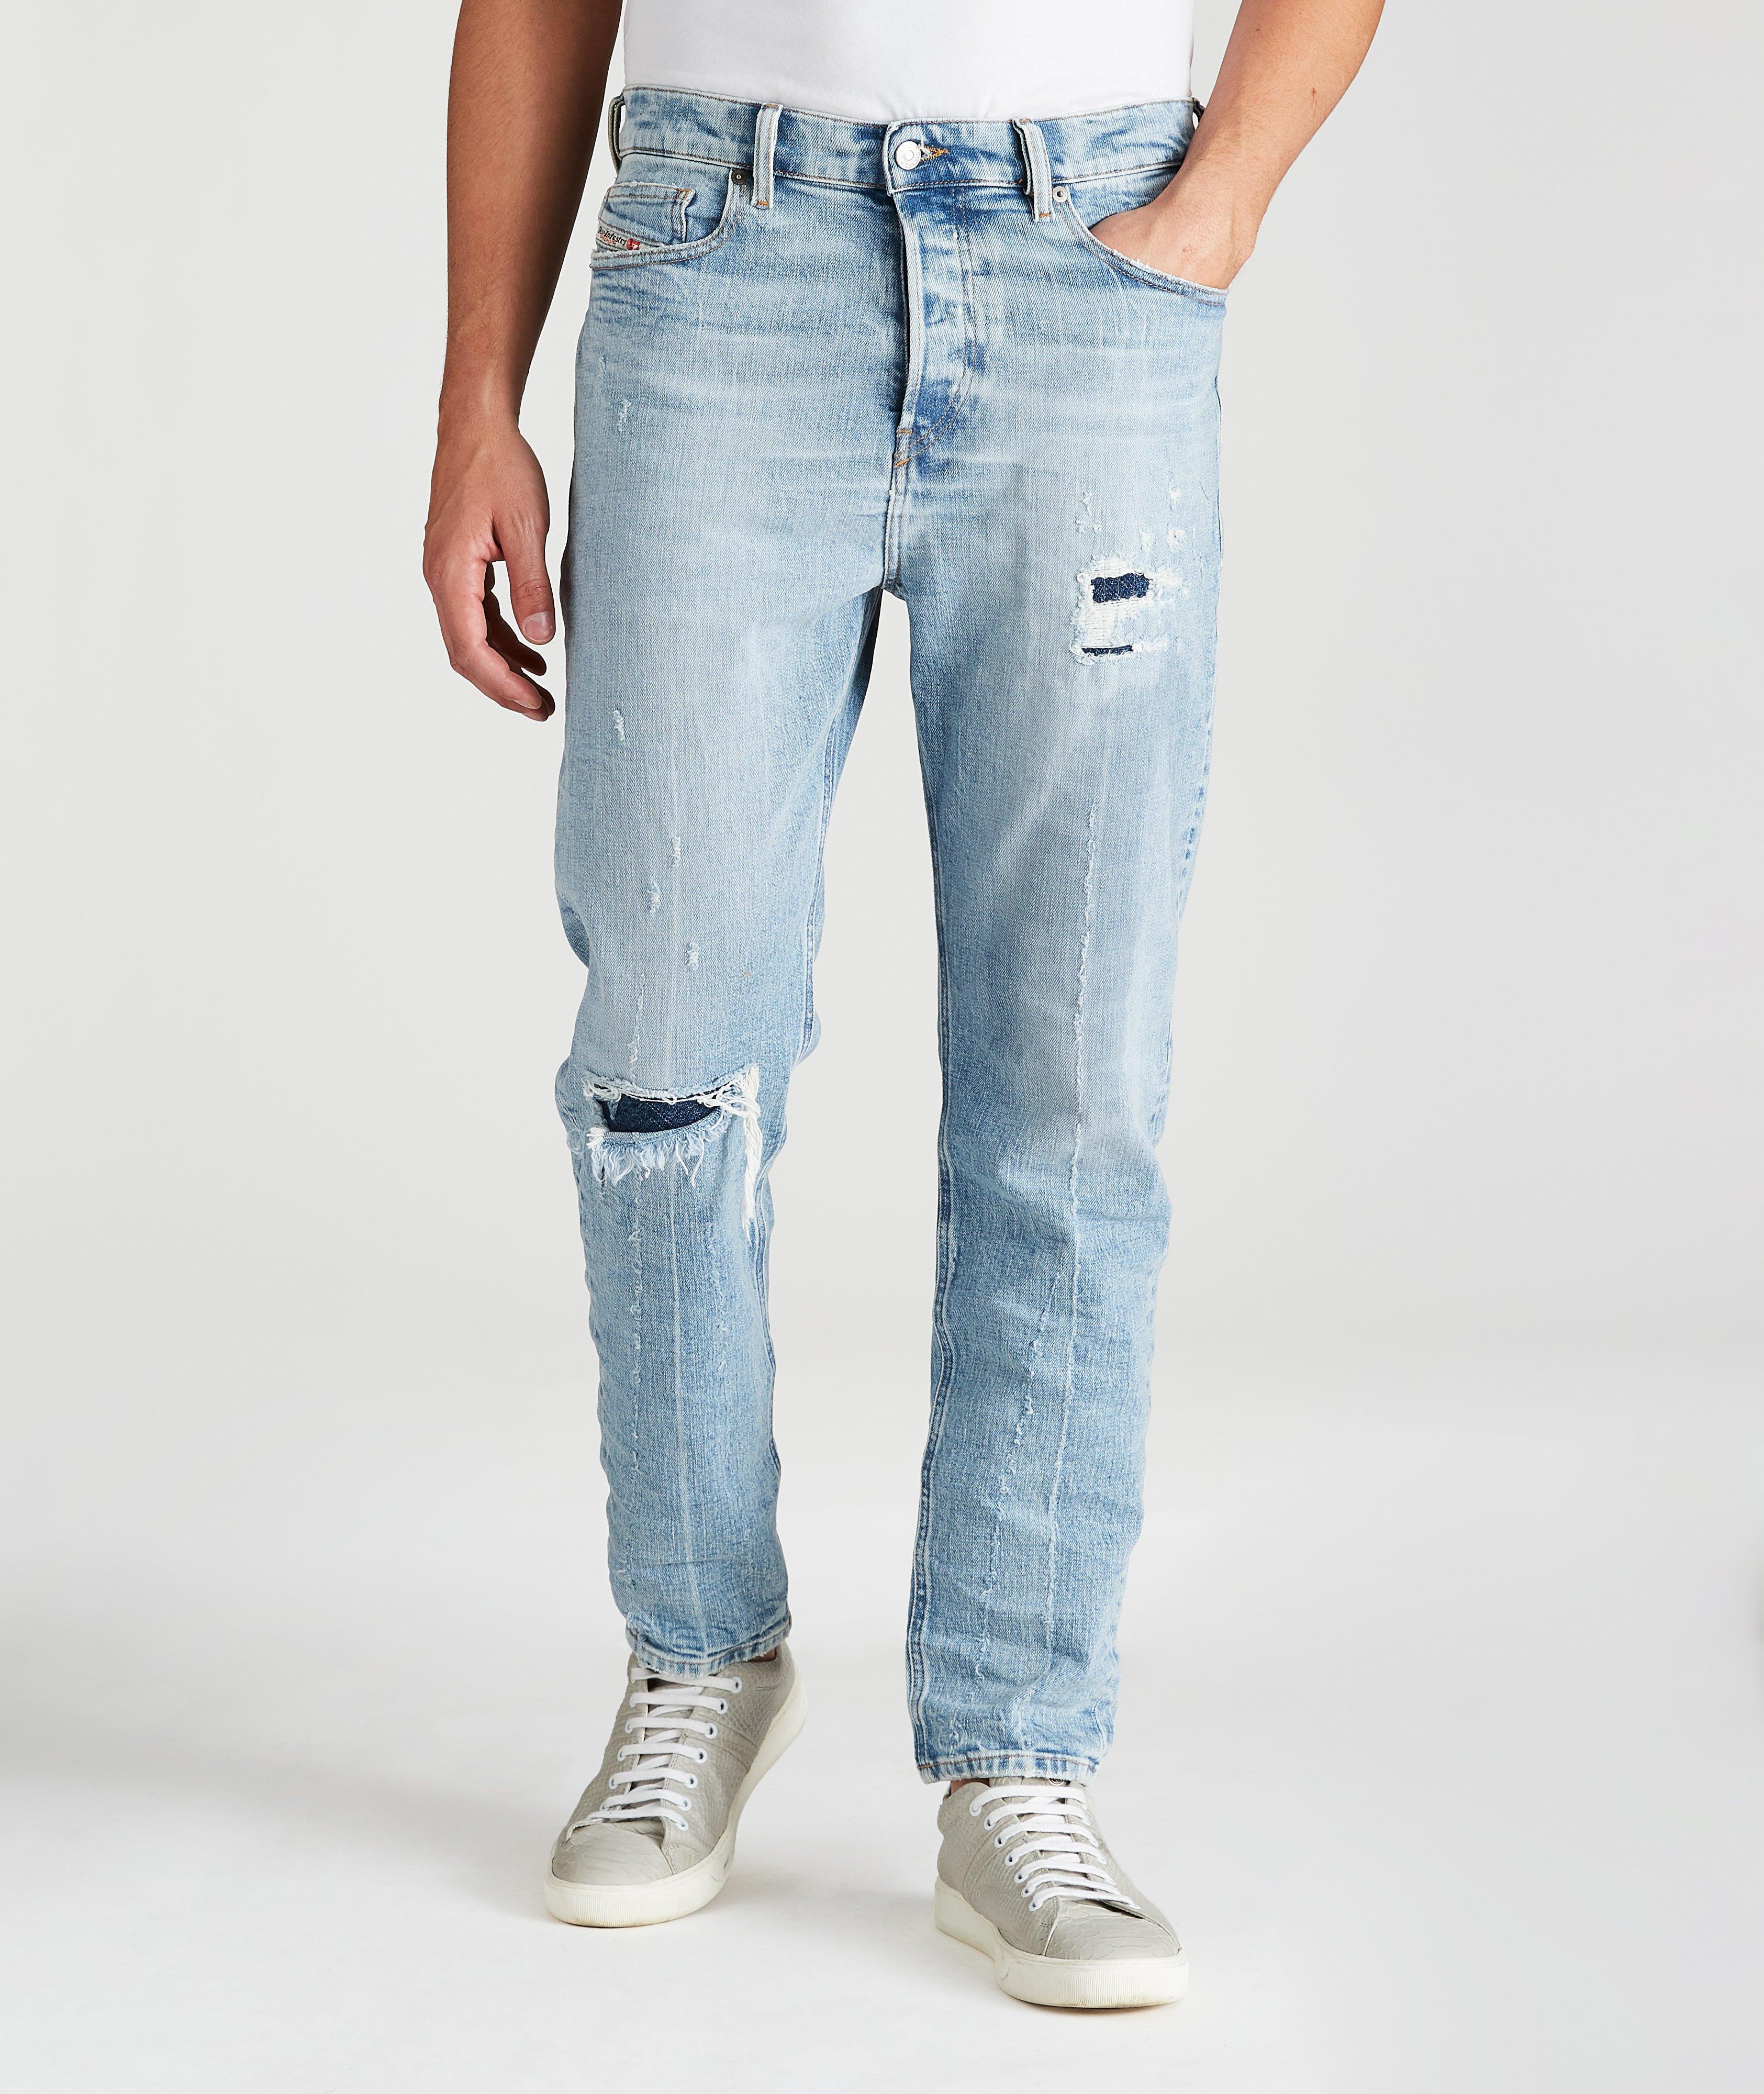 D-Vider Distressed Slim Jeans image 0